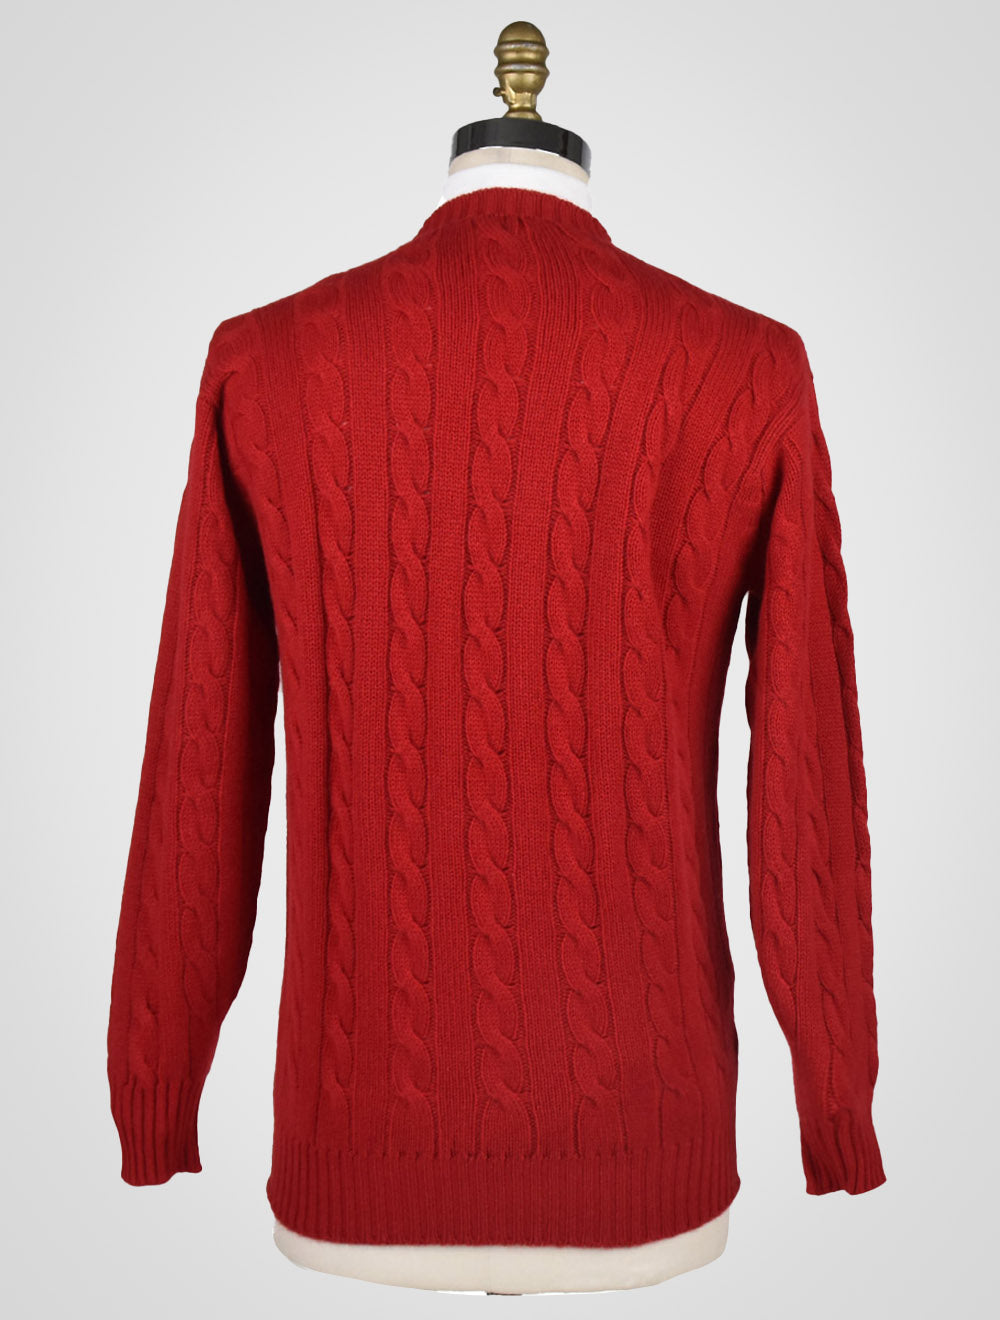 Cesare Attolini Red Cashmere Sweater Crewneck